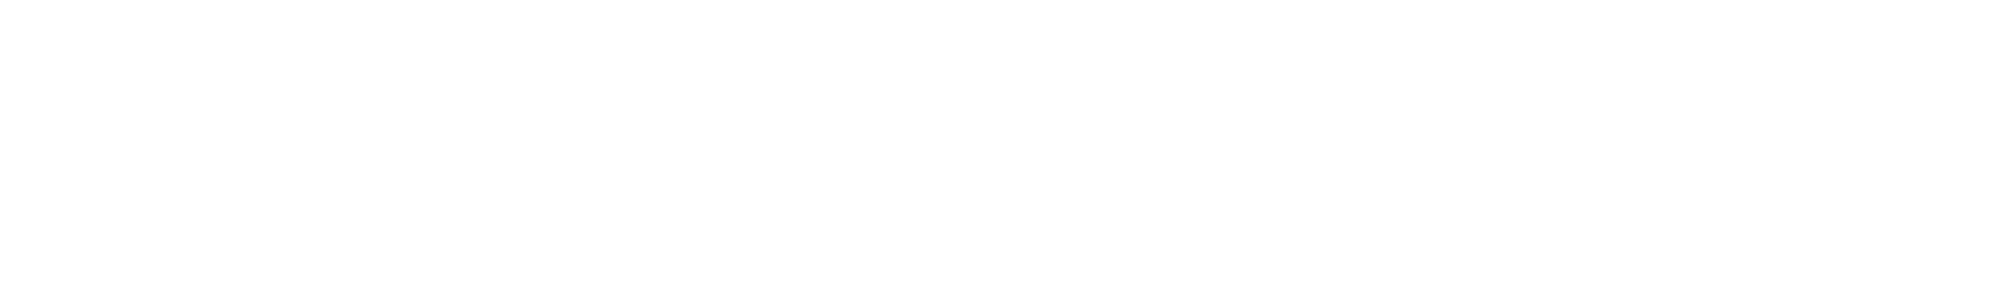 Sonny Korotana Graphic Header